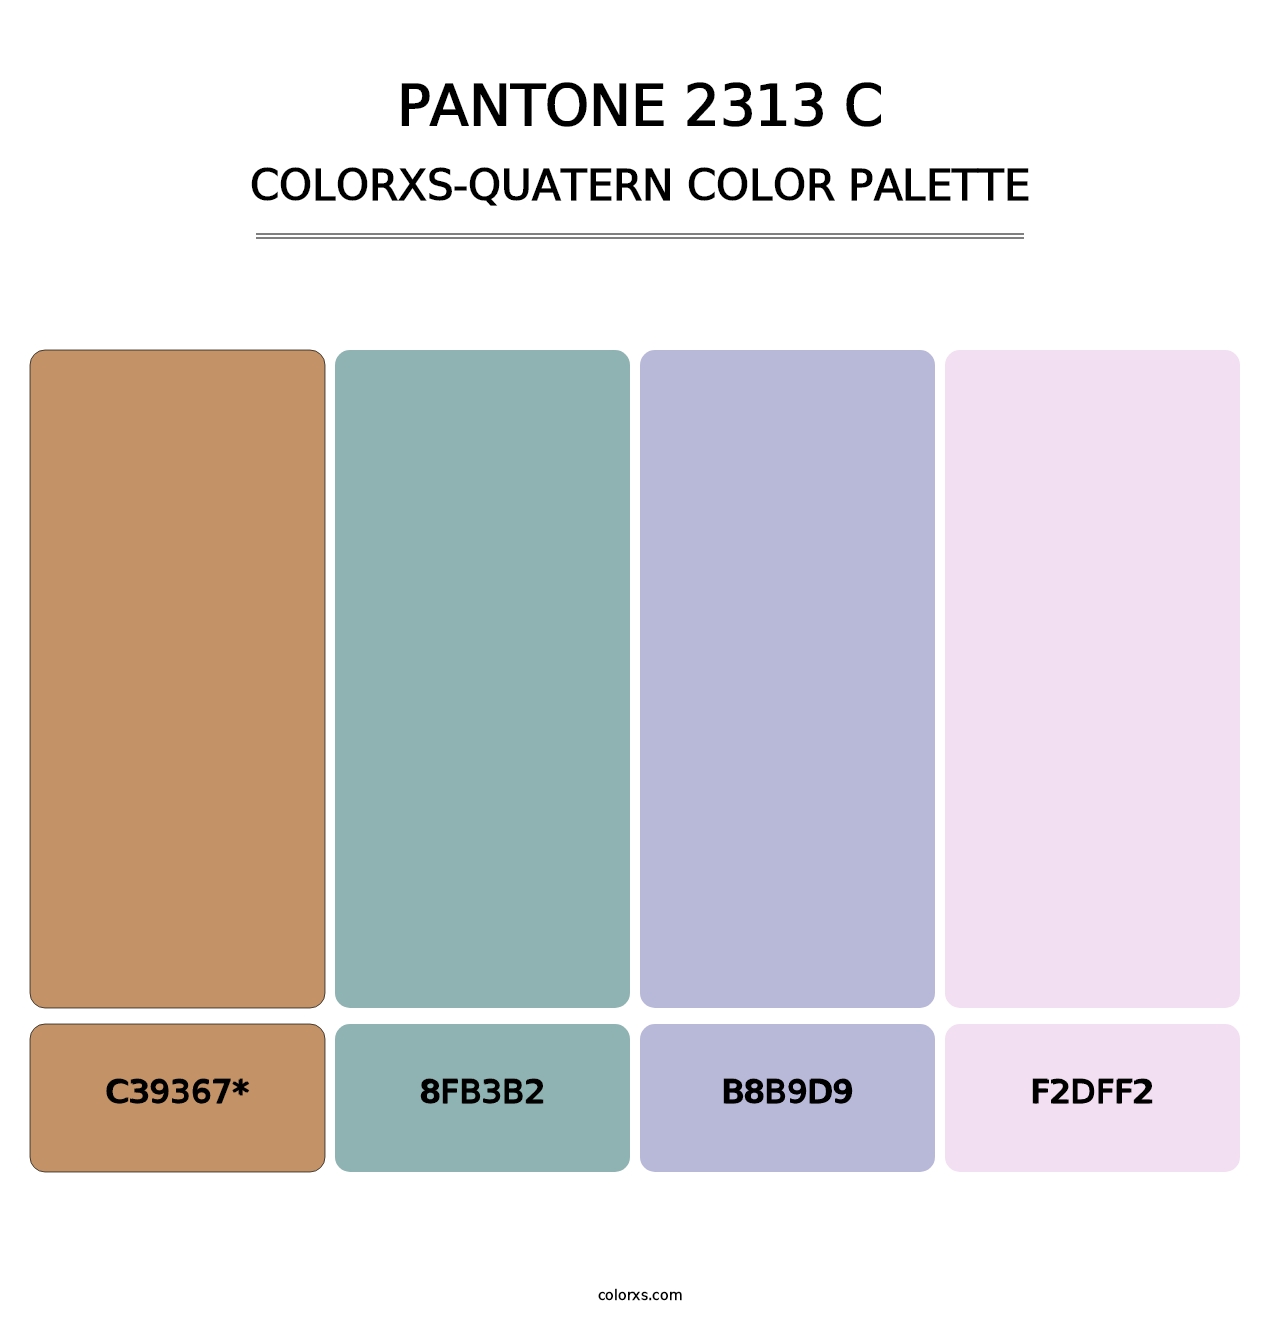 PANTONE 2313 C - Colorxs Quatern Palette